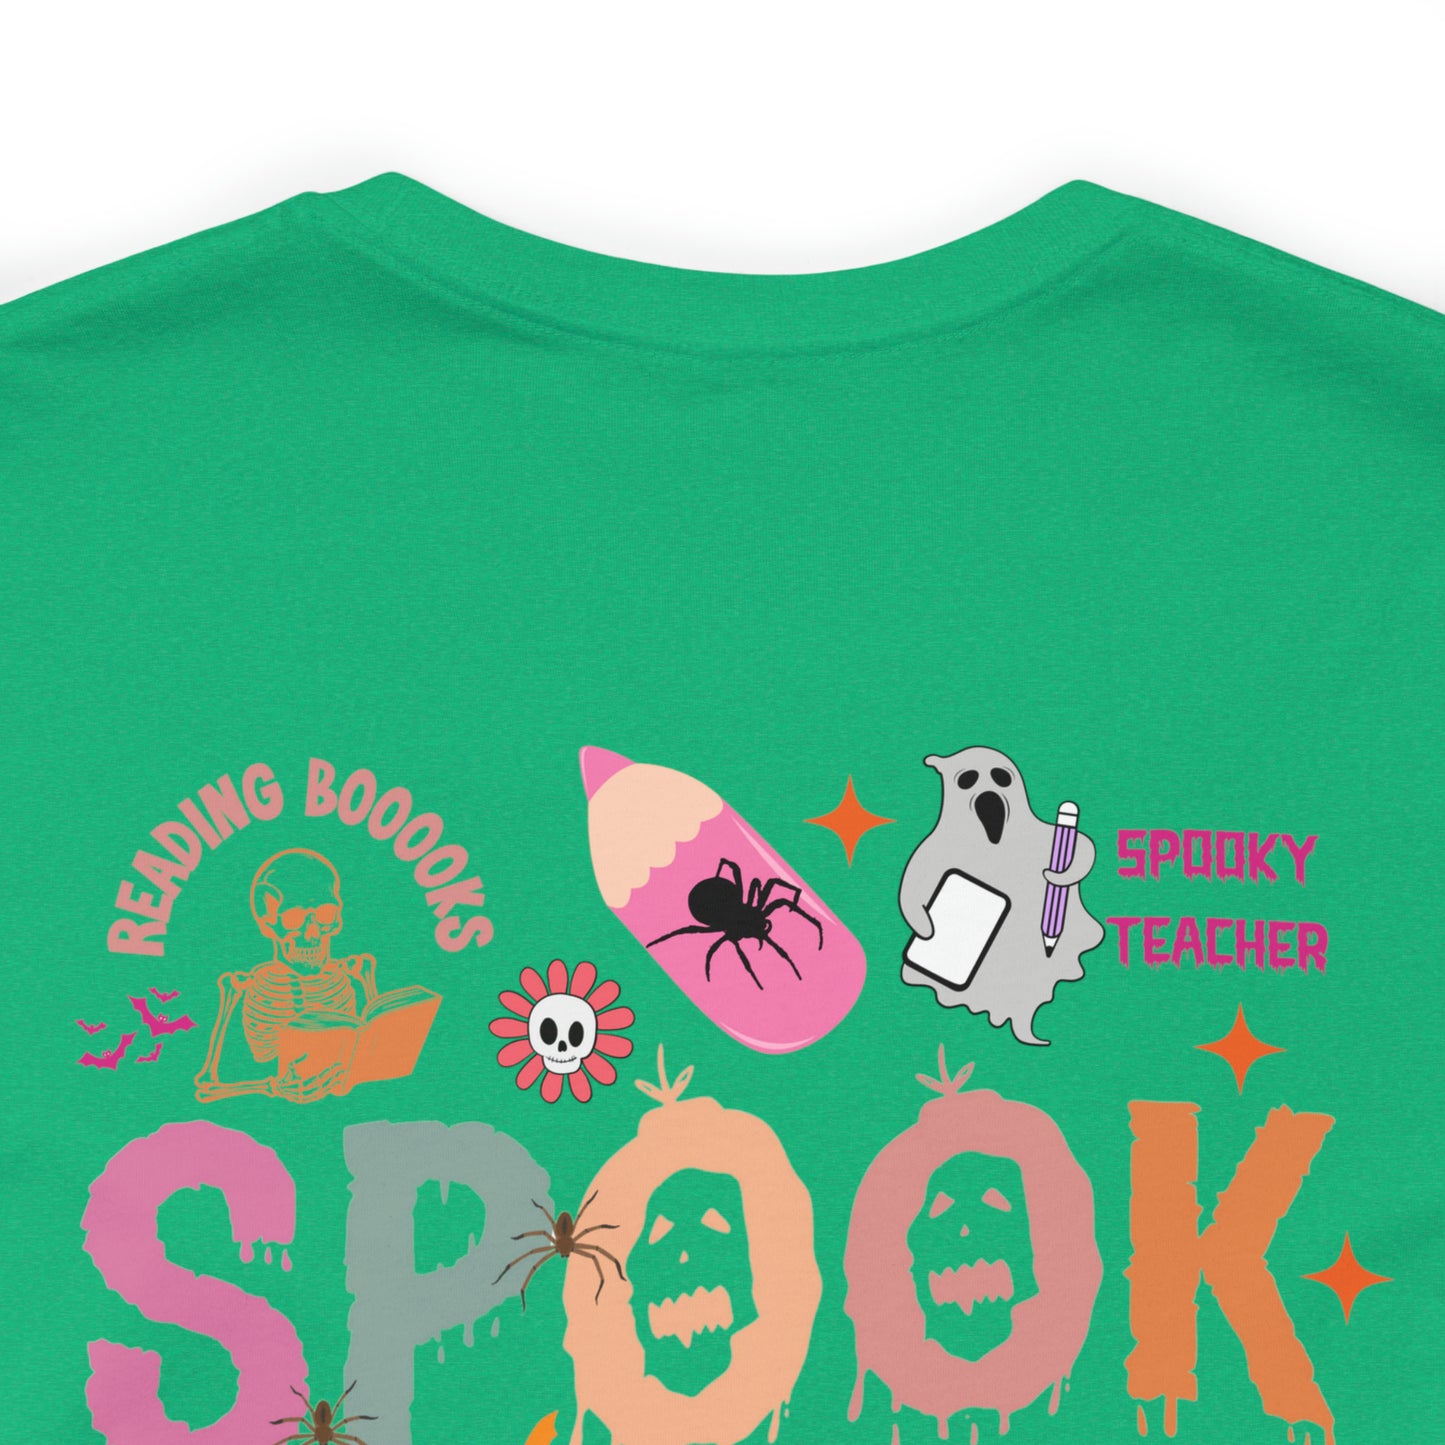 Spooktacular Teacher Shirt, Cute Ghost Teacher Halloween Shirt, Teacher Halloween Shirt, Teacher Halloween Gift, T617